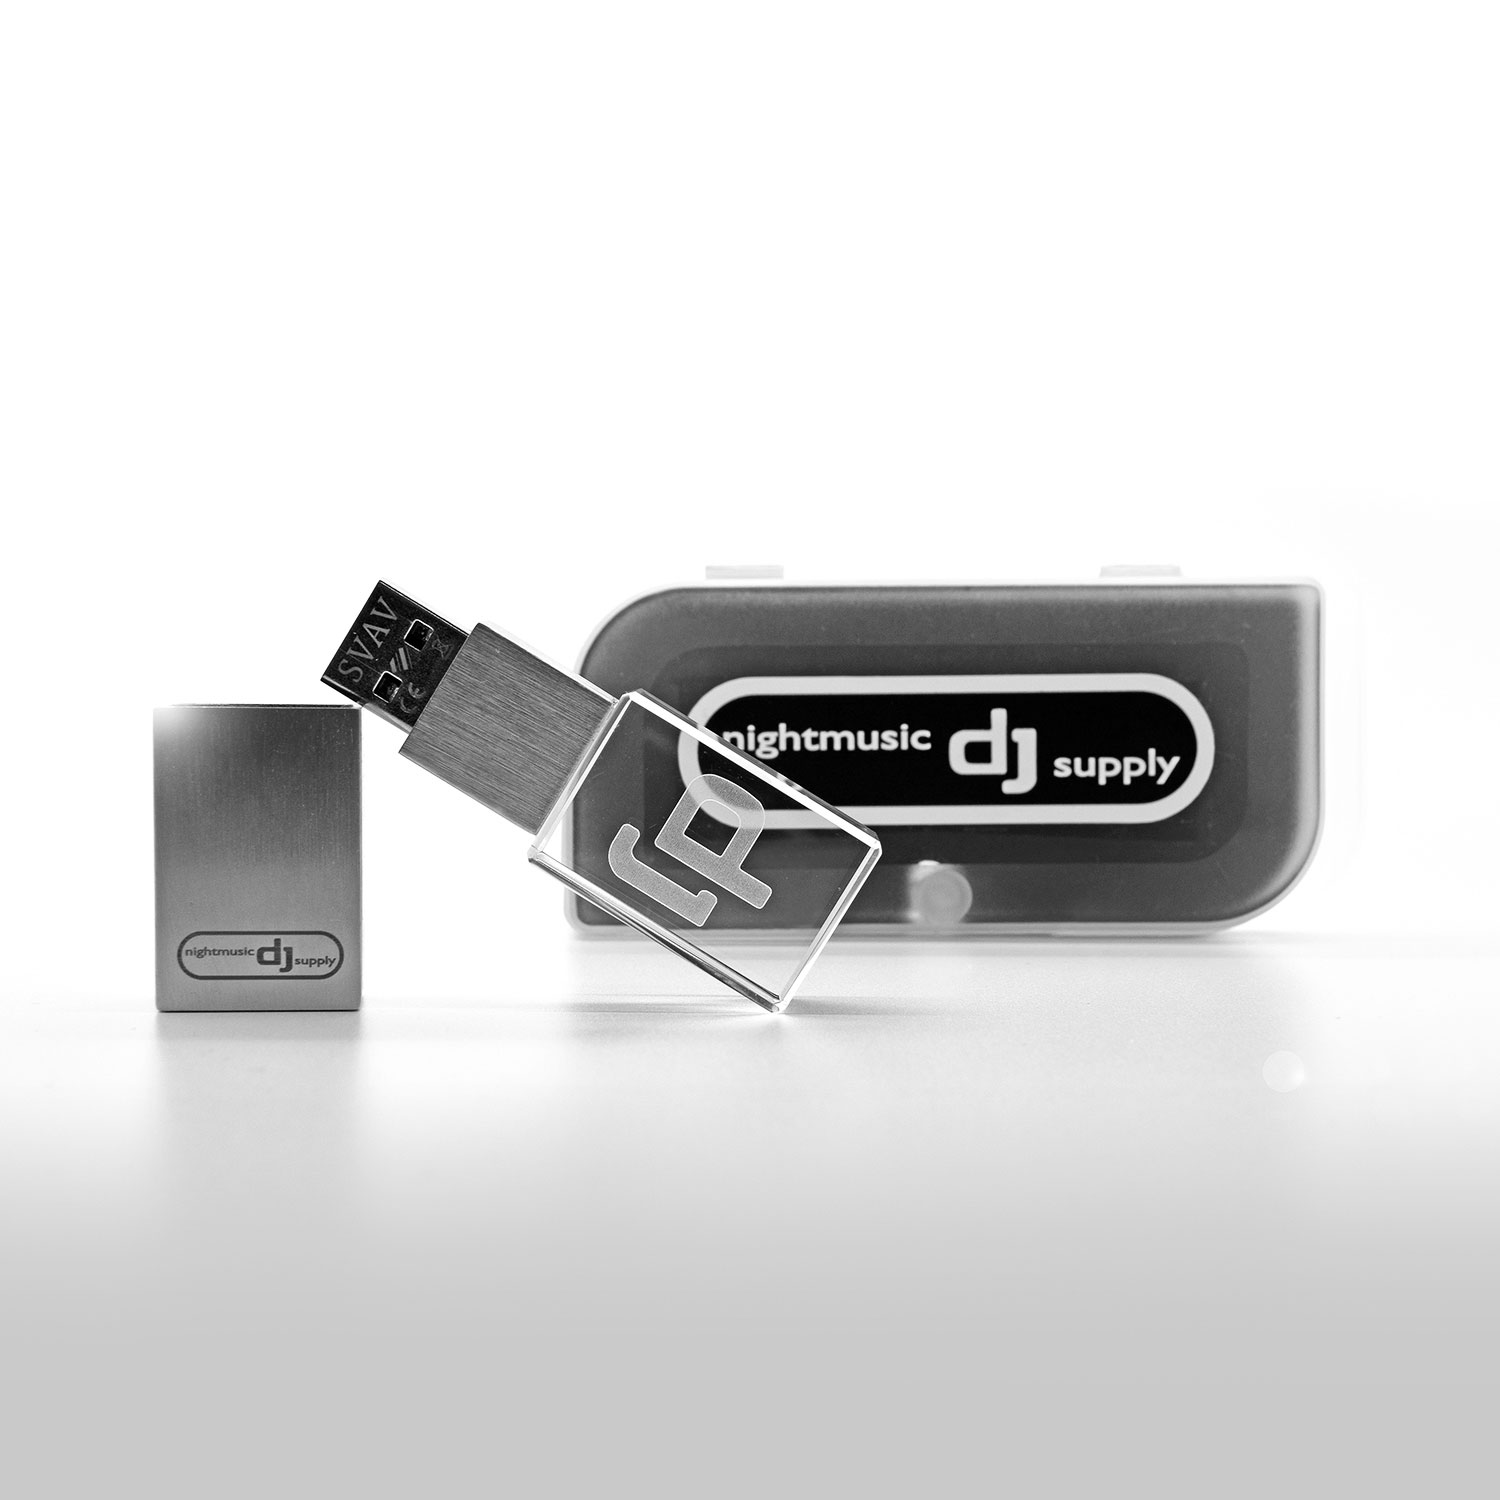 Premium Crystal DJ Stick - USB 3.0 Flash Drive